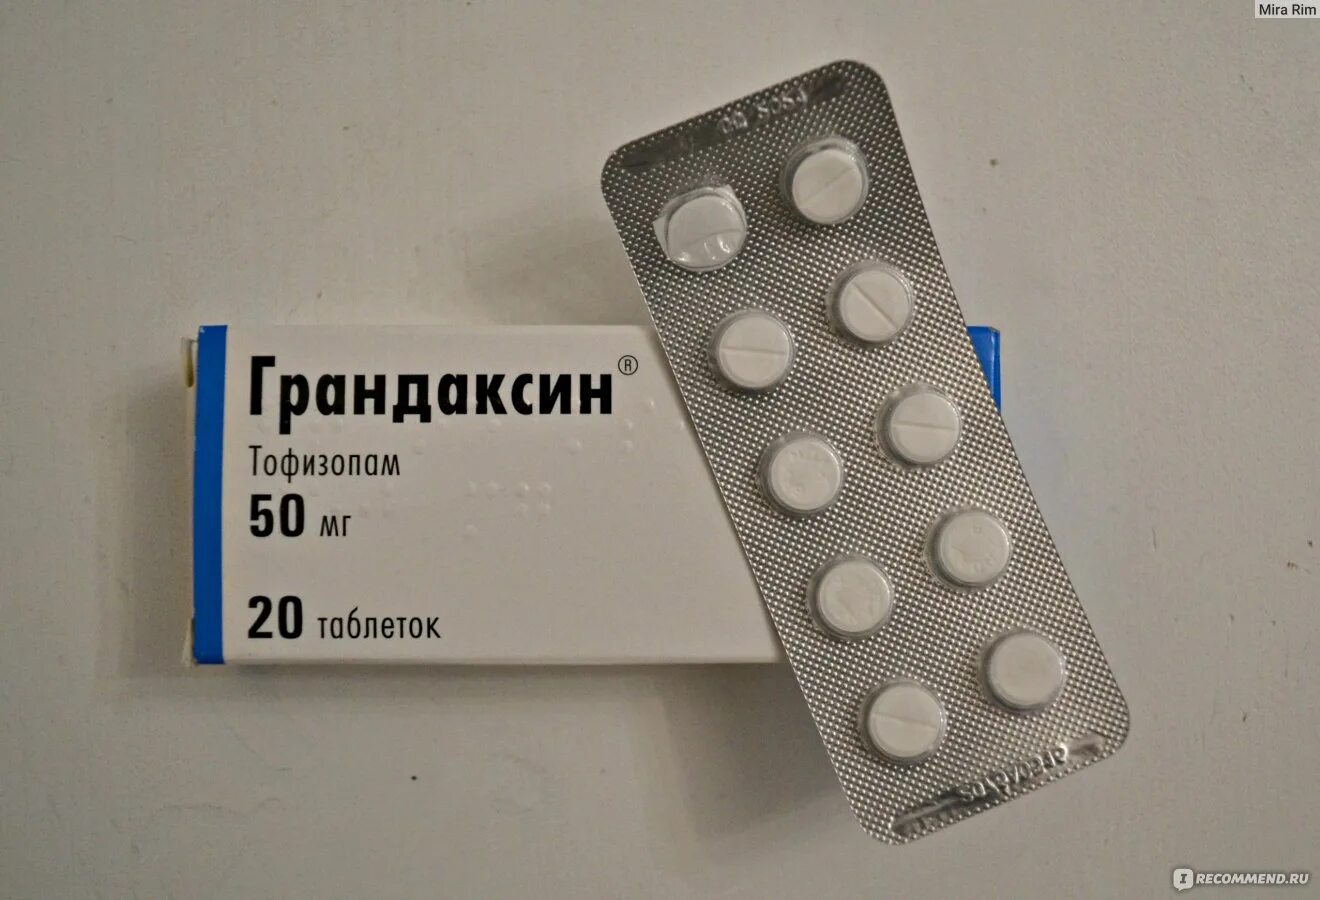 Грандаксин 50 мг. Грандаксин 10 мг. Грандаксин (таб. 50мг n60 Вн ) Egis-Венгрия. Тофизопам грандаксин. Грандаксин группа препаратов